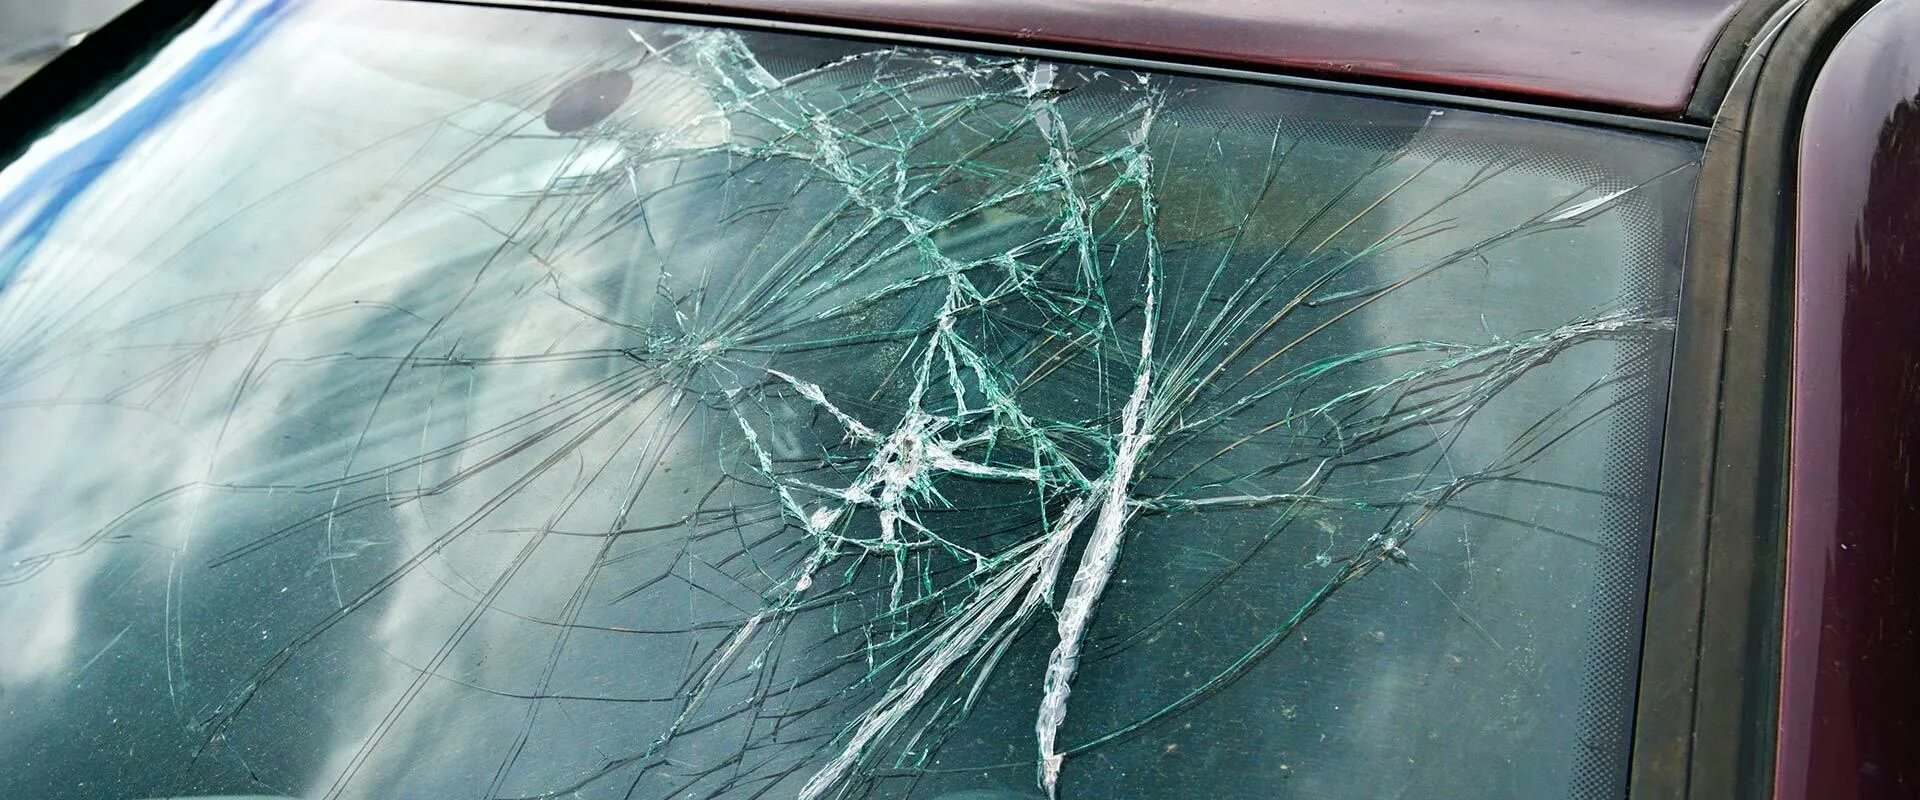 Задать разбитый. Разбито лобовое стекло. Треснутое стекло. Треснутое лобовое стекло. Разбитое автомобильное стекло.